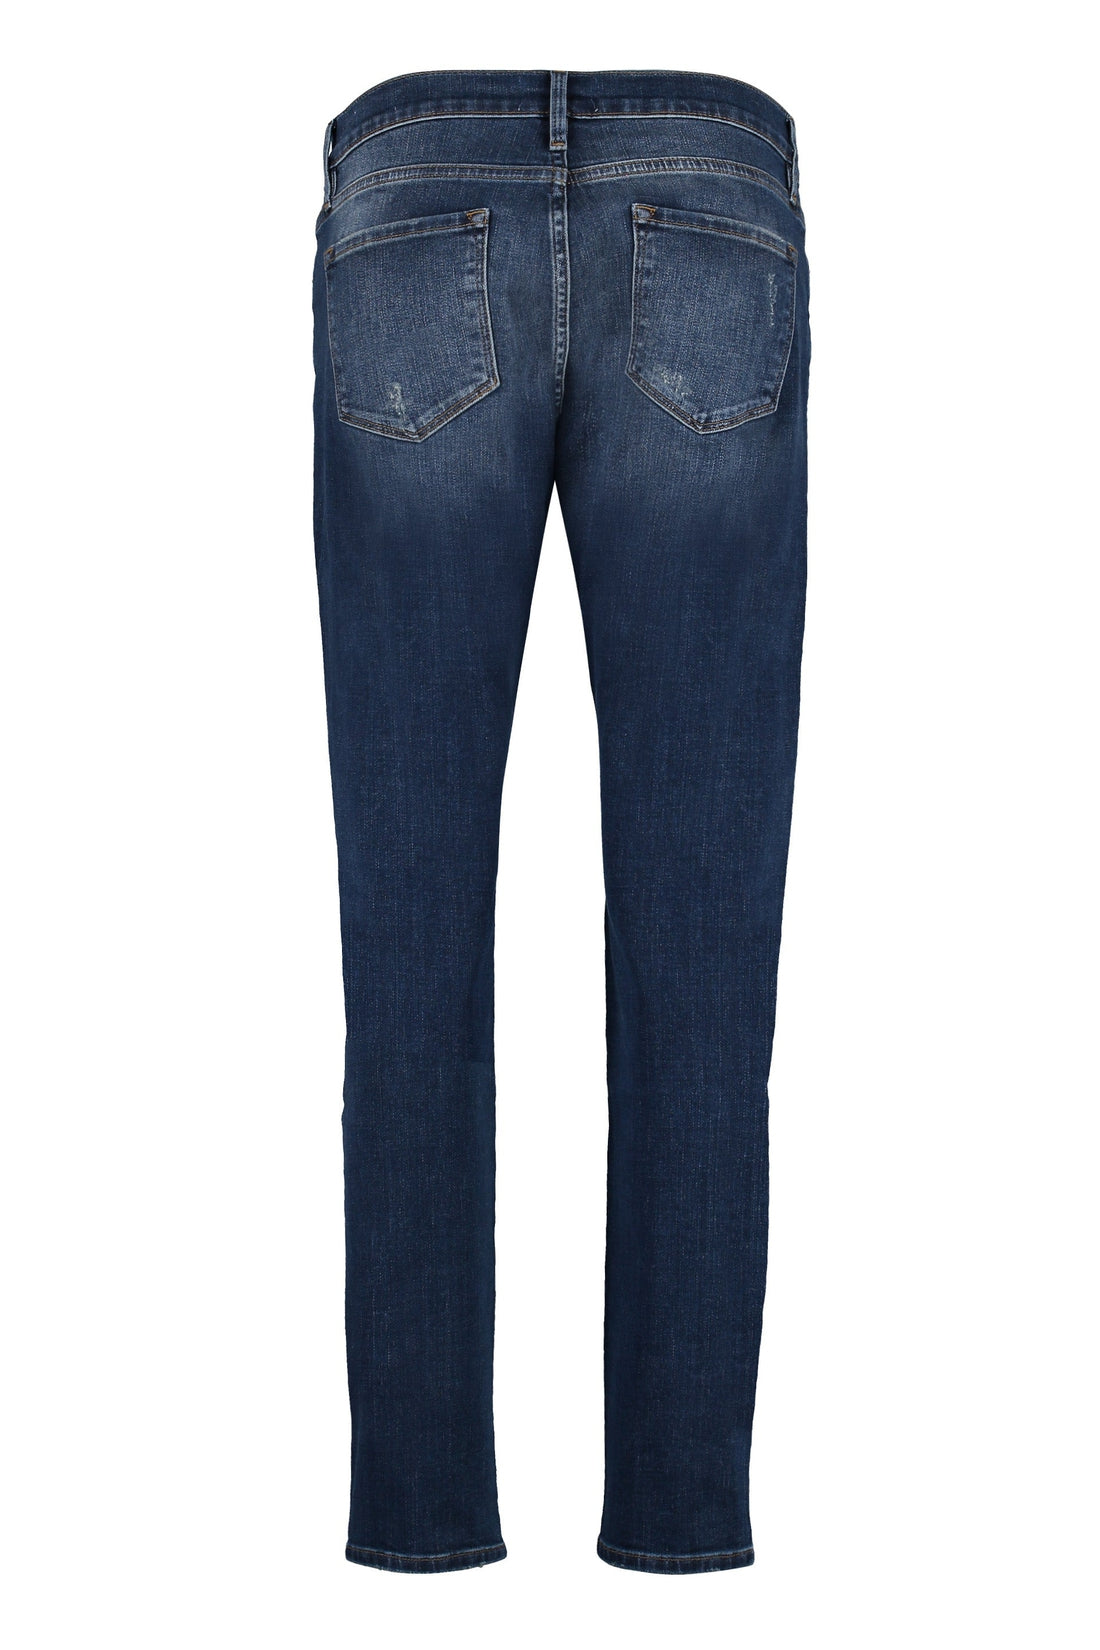 Frame-OUTLET-SALE-Le Garçon straight leg jeans-ARCHIVIST